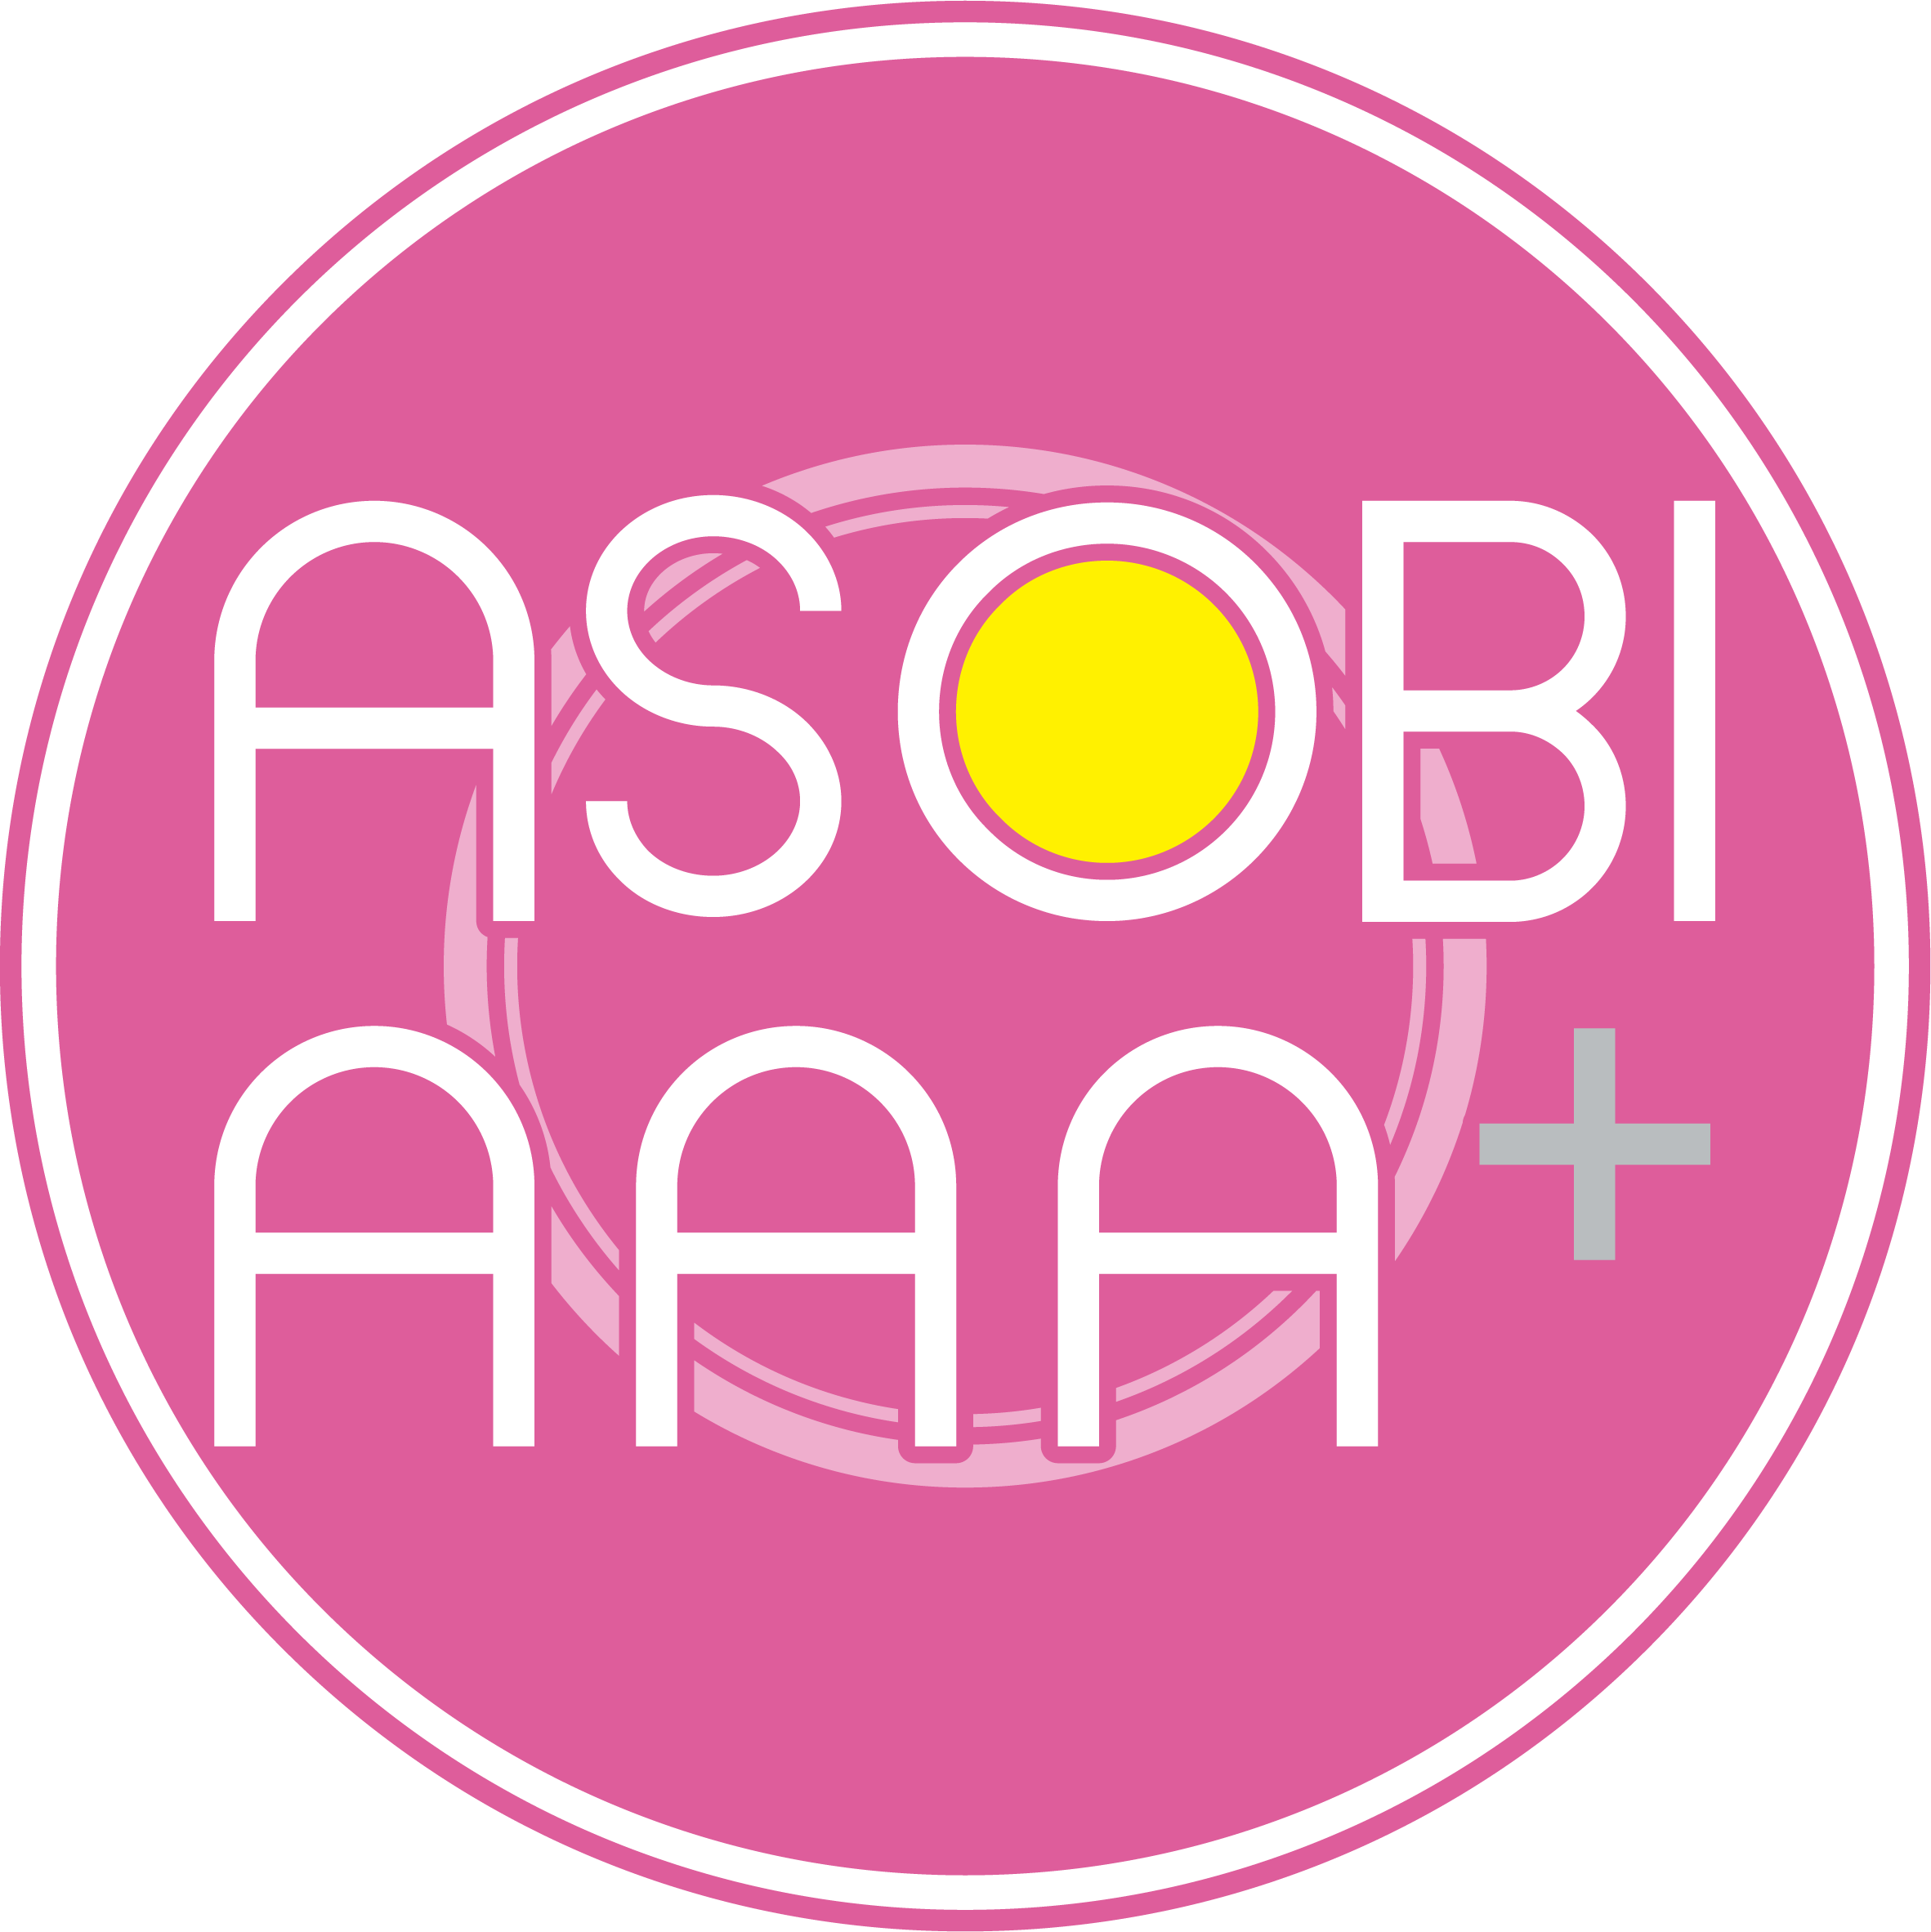 ASOBI AAA+®